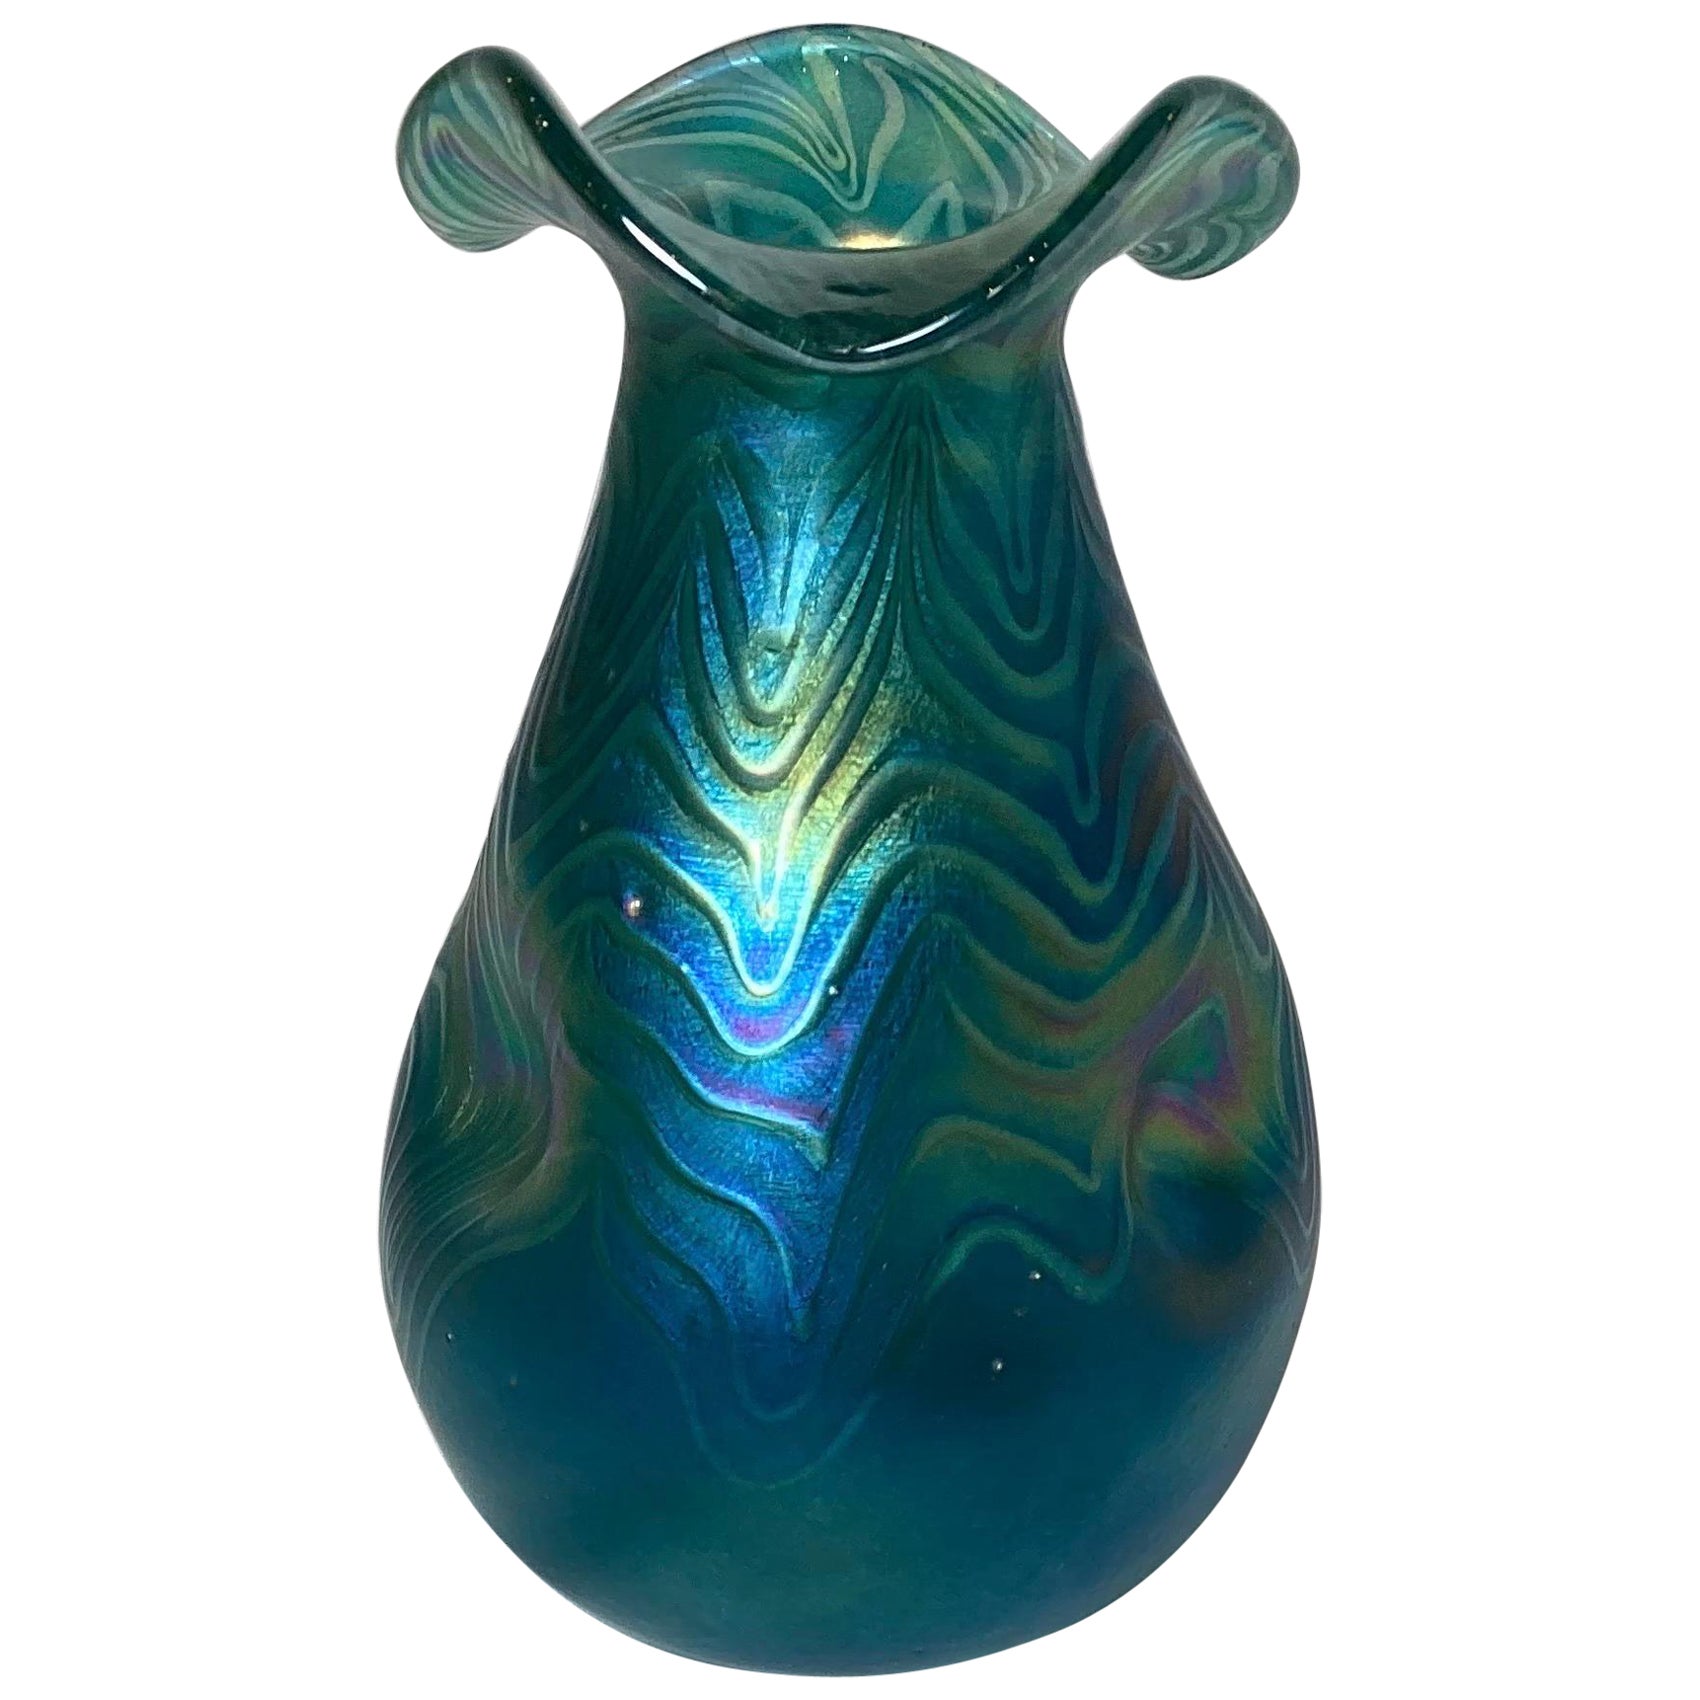 Vase soufflé à la main Art Nouveau, finition lisse à l'huile